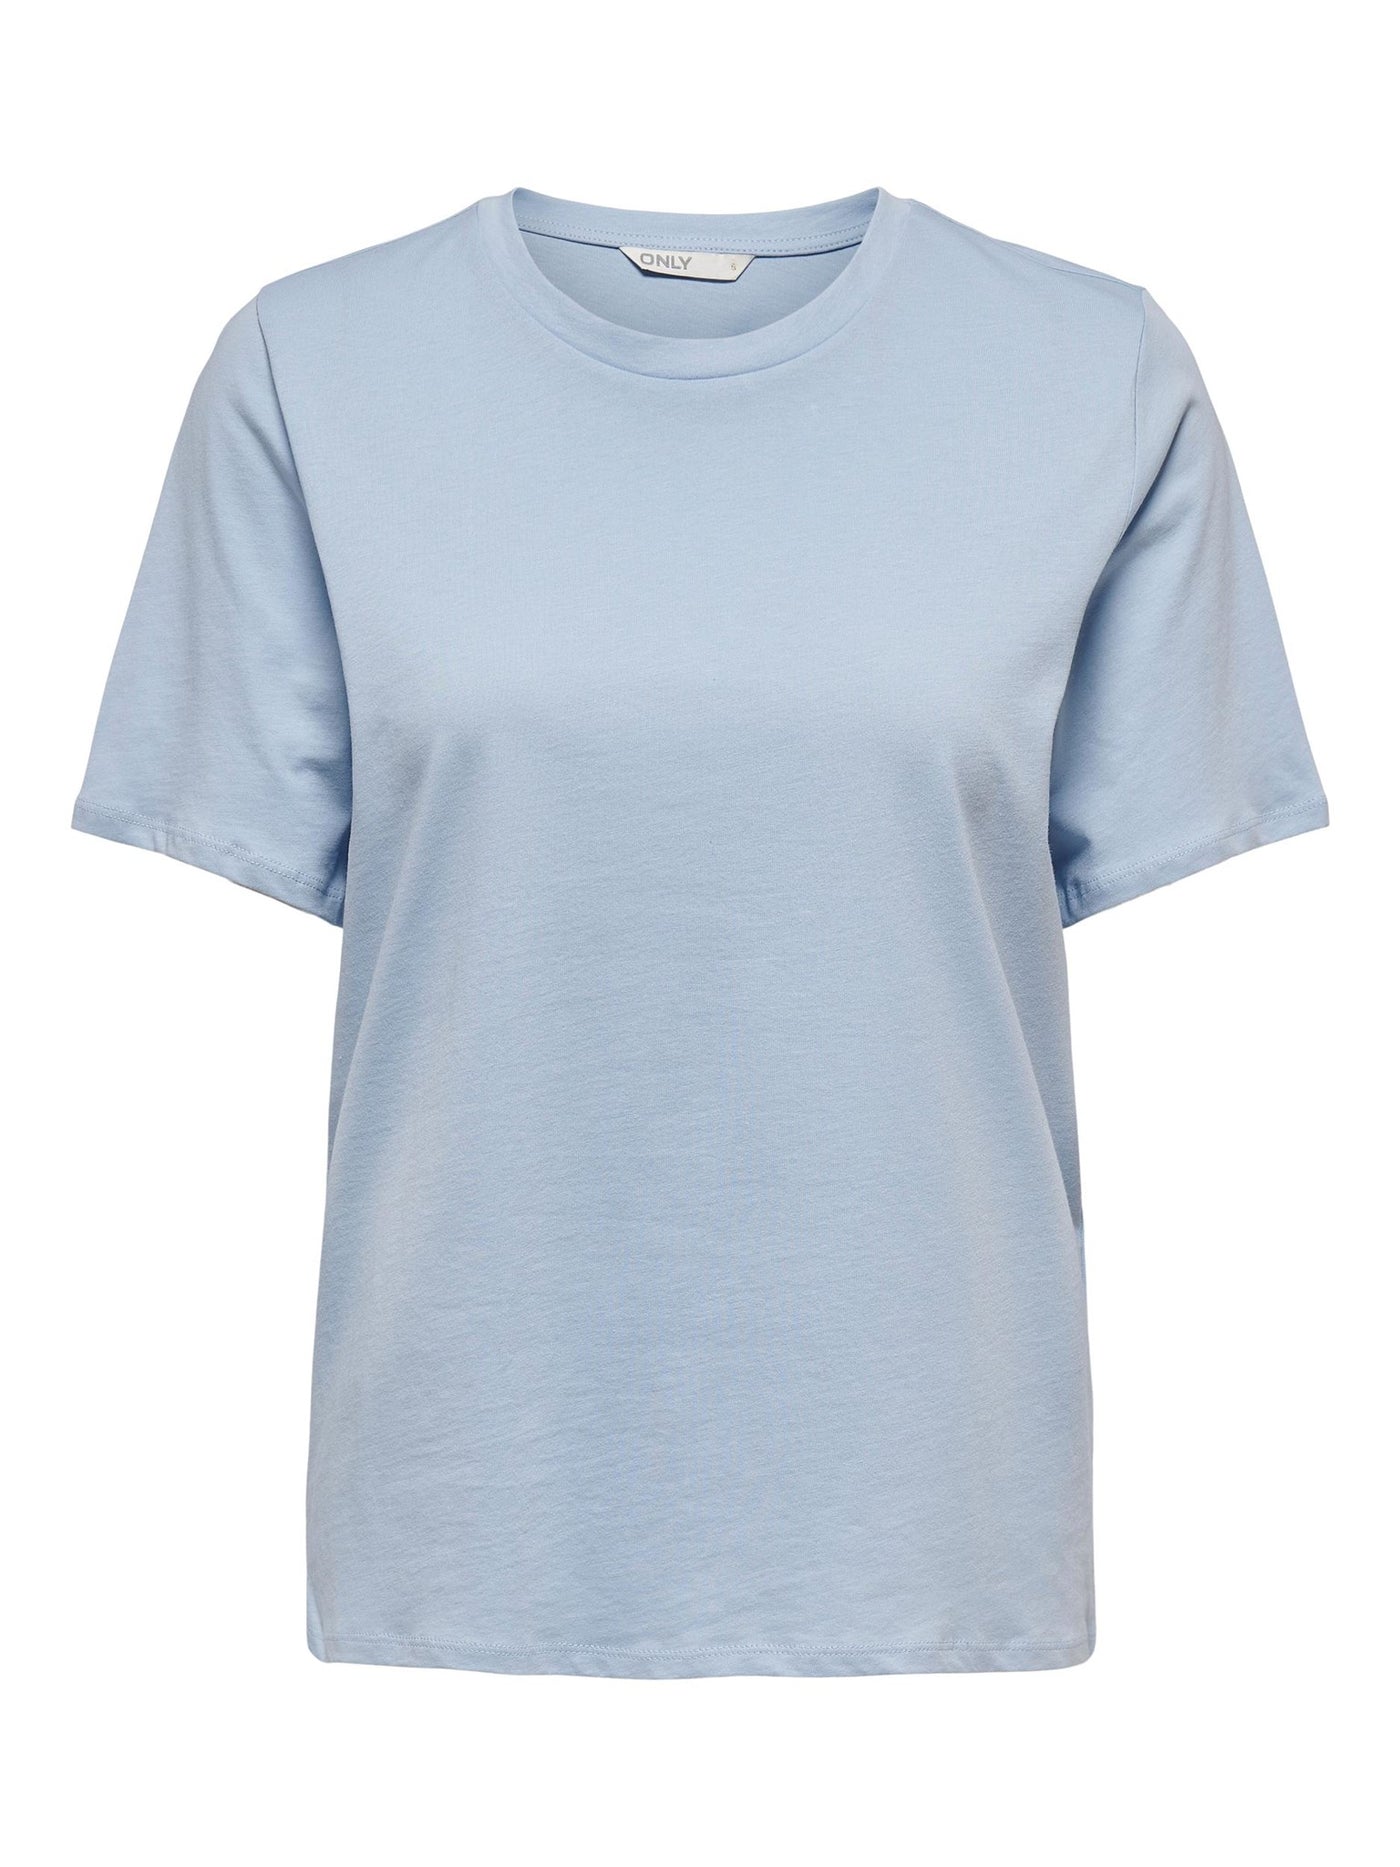 New-Only T-Shirt - Kentucky Blue - ONLY - Blue 2